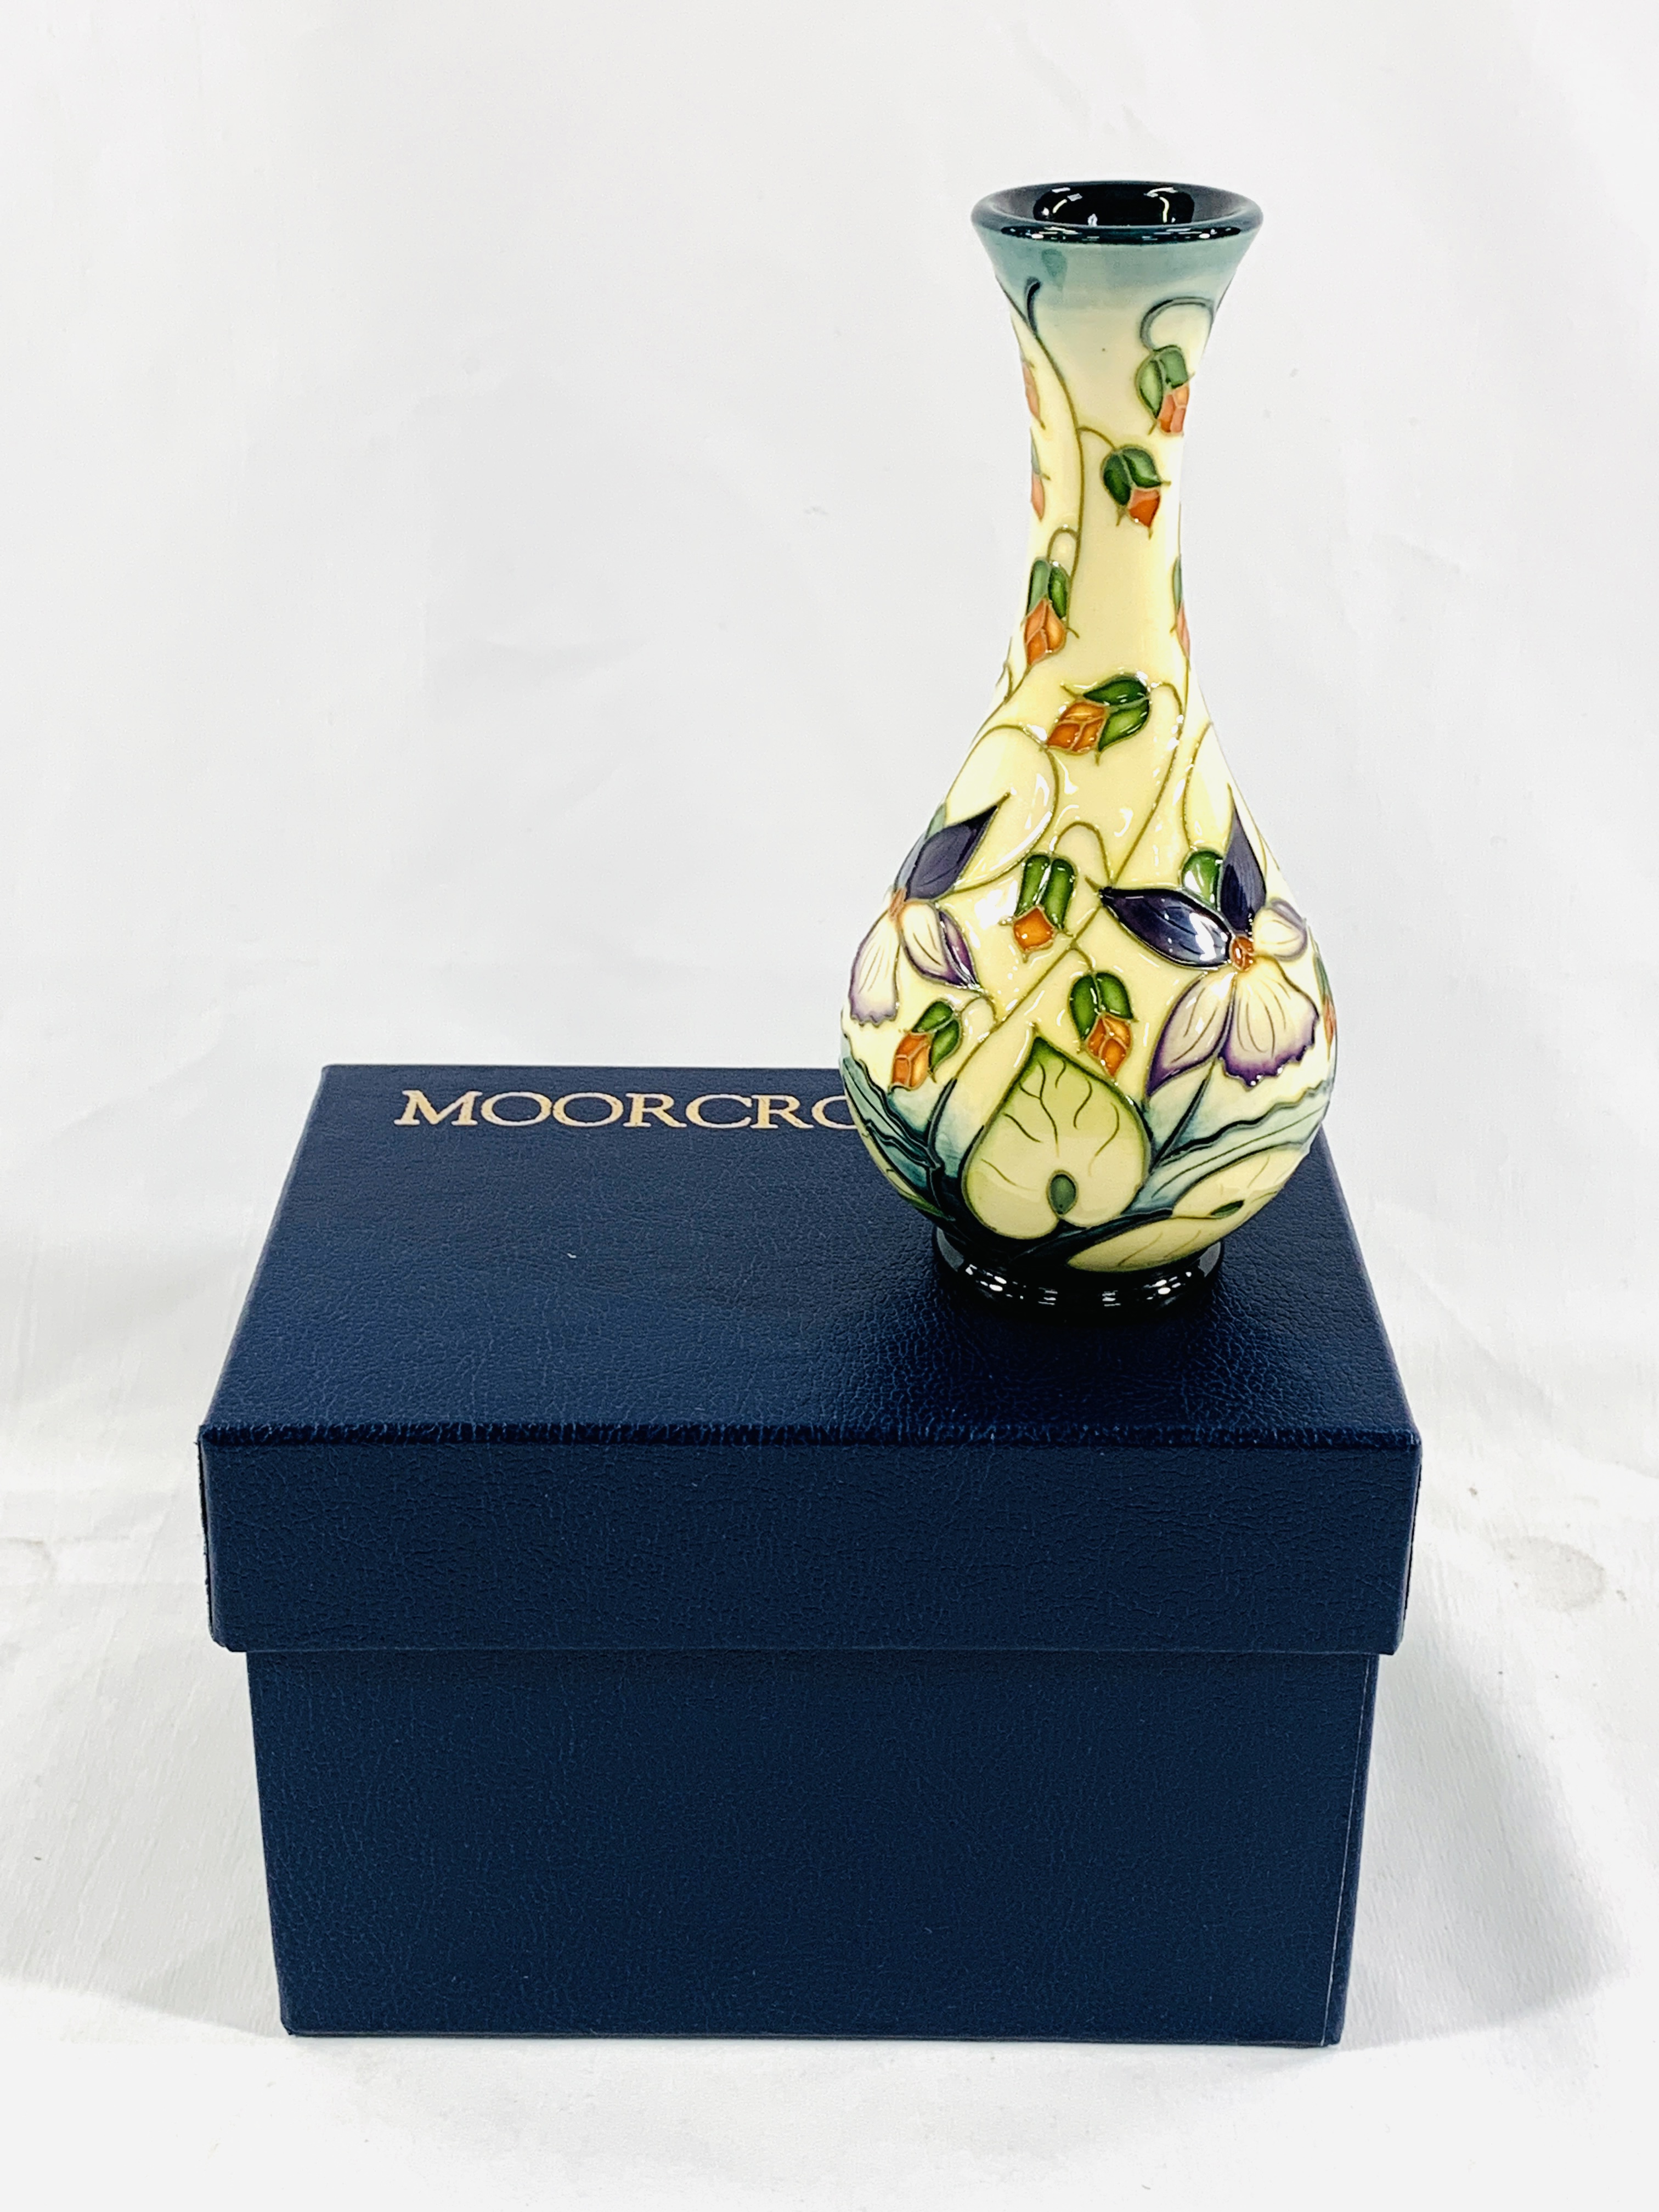 Boxed Moorcroft vase - Image 2 of 4